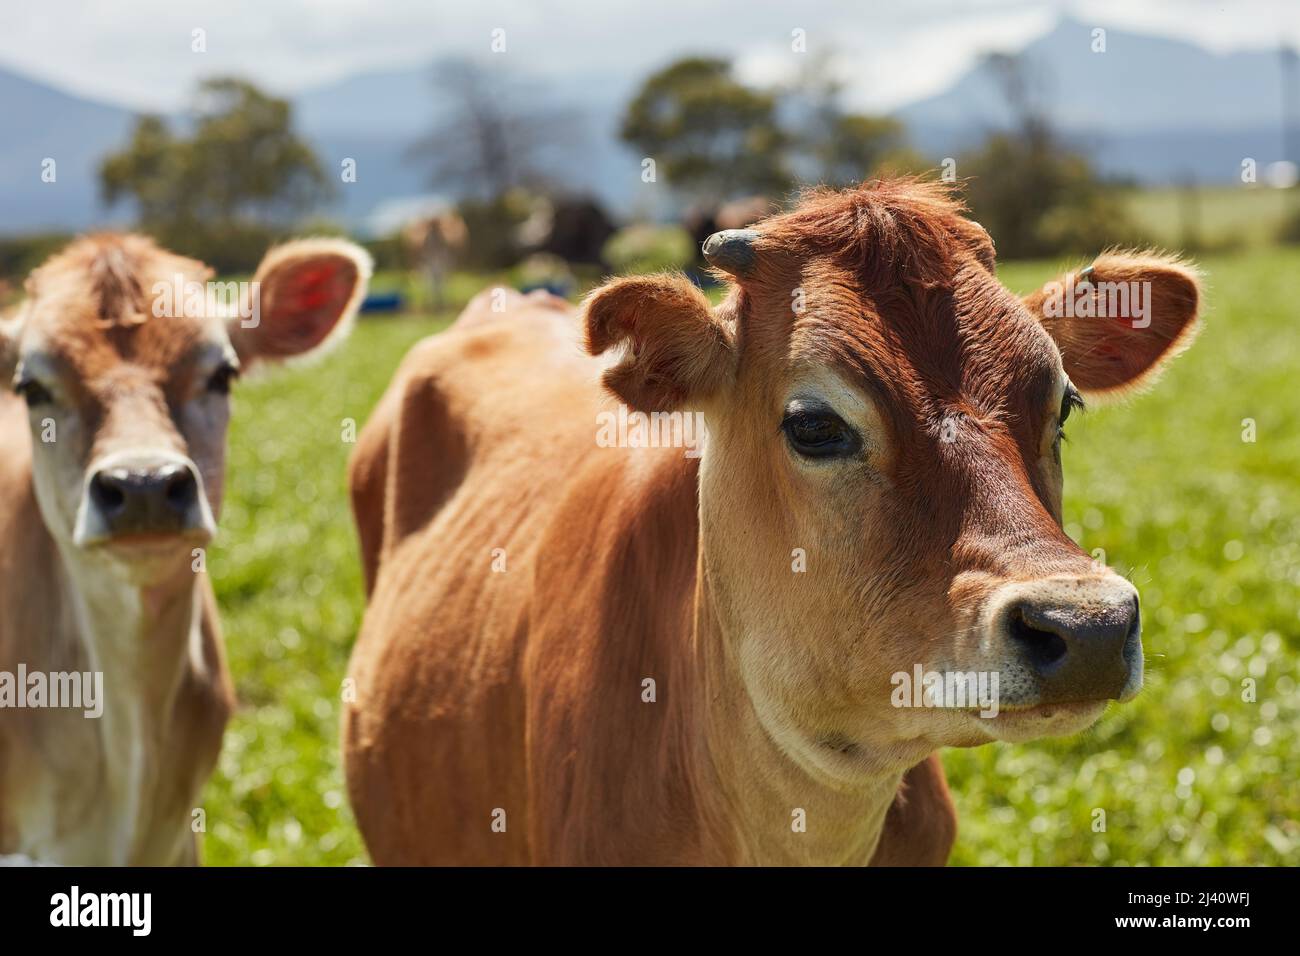 Alles, was sie wollen, ist grünes Gras und Sonnenschein. Aufnahme einer Herde Milchkühe, die auf einer grünen Weide stehen. Stockfoto